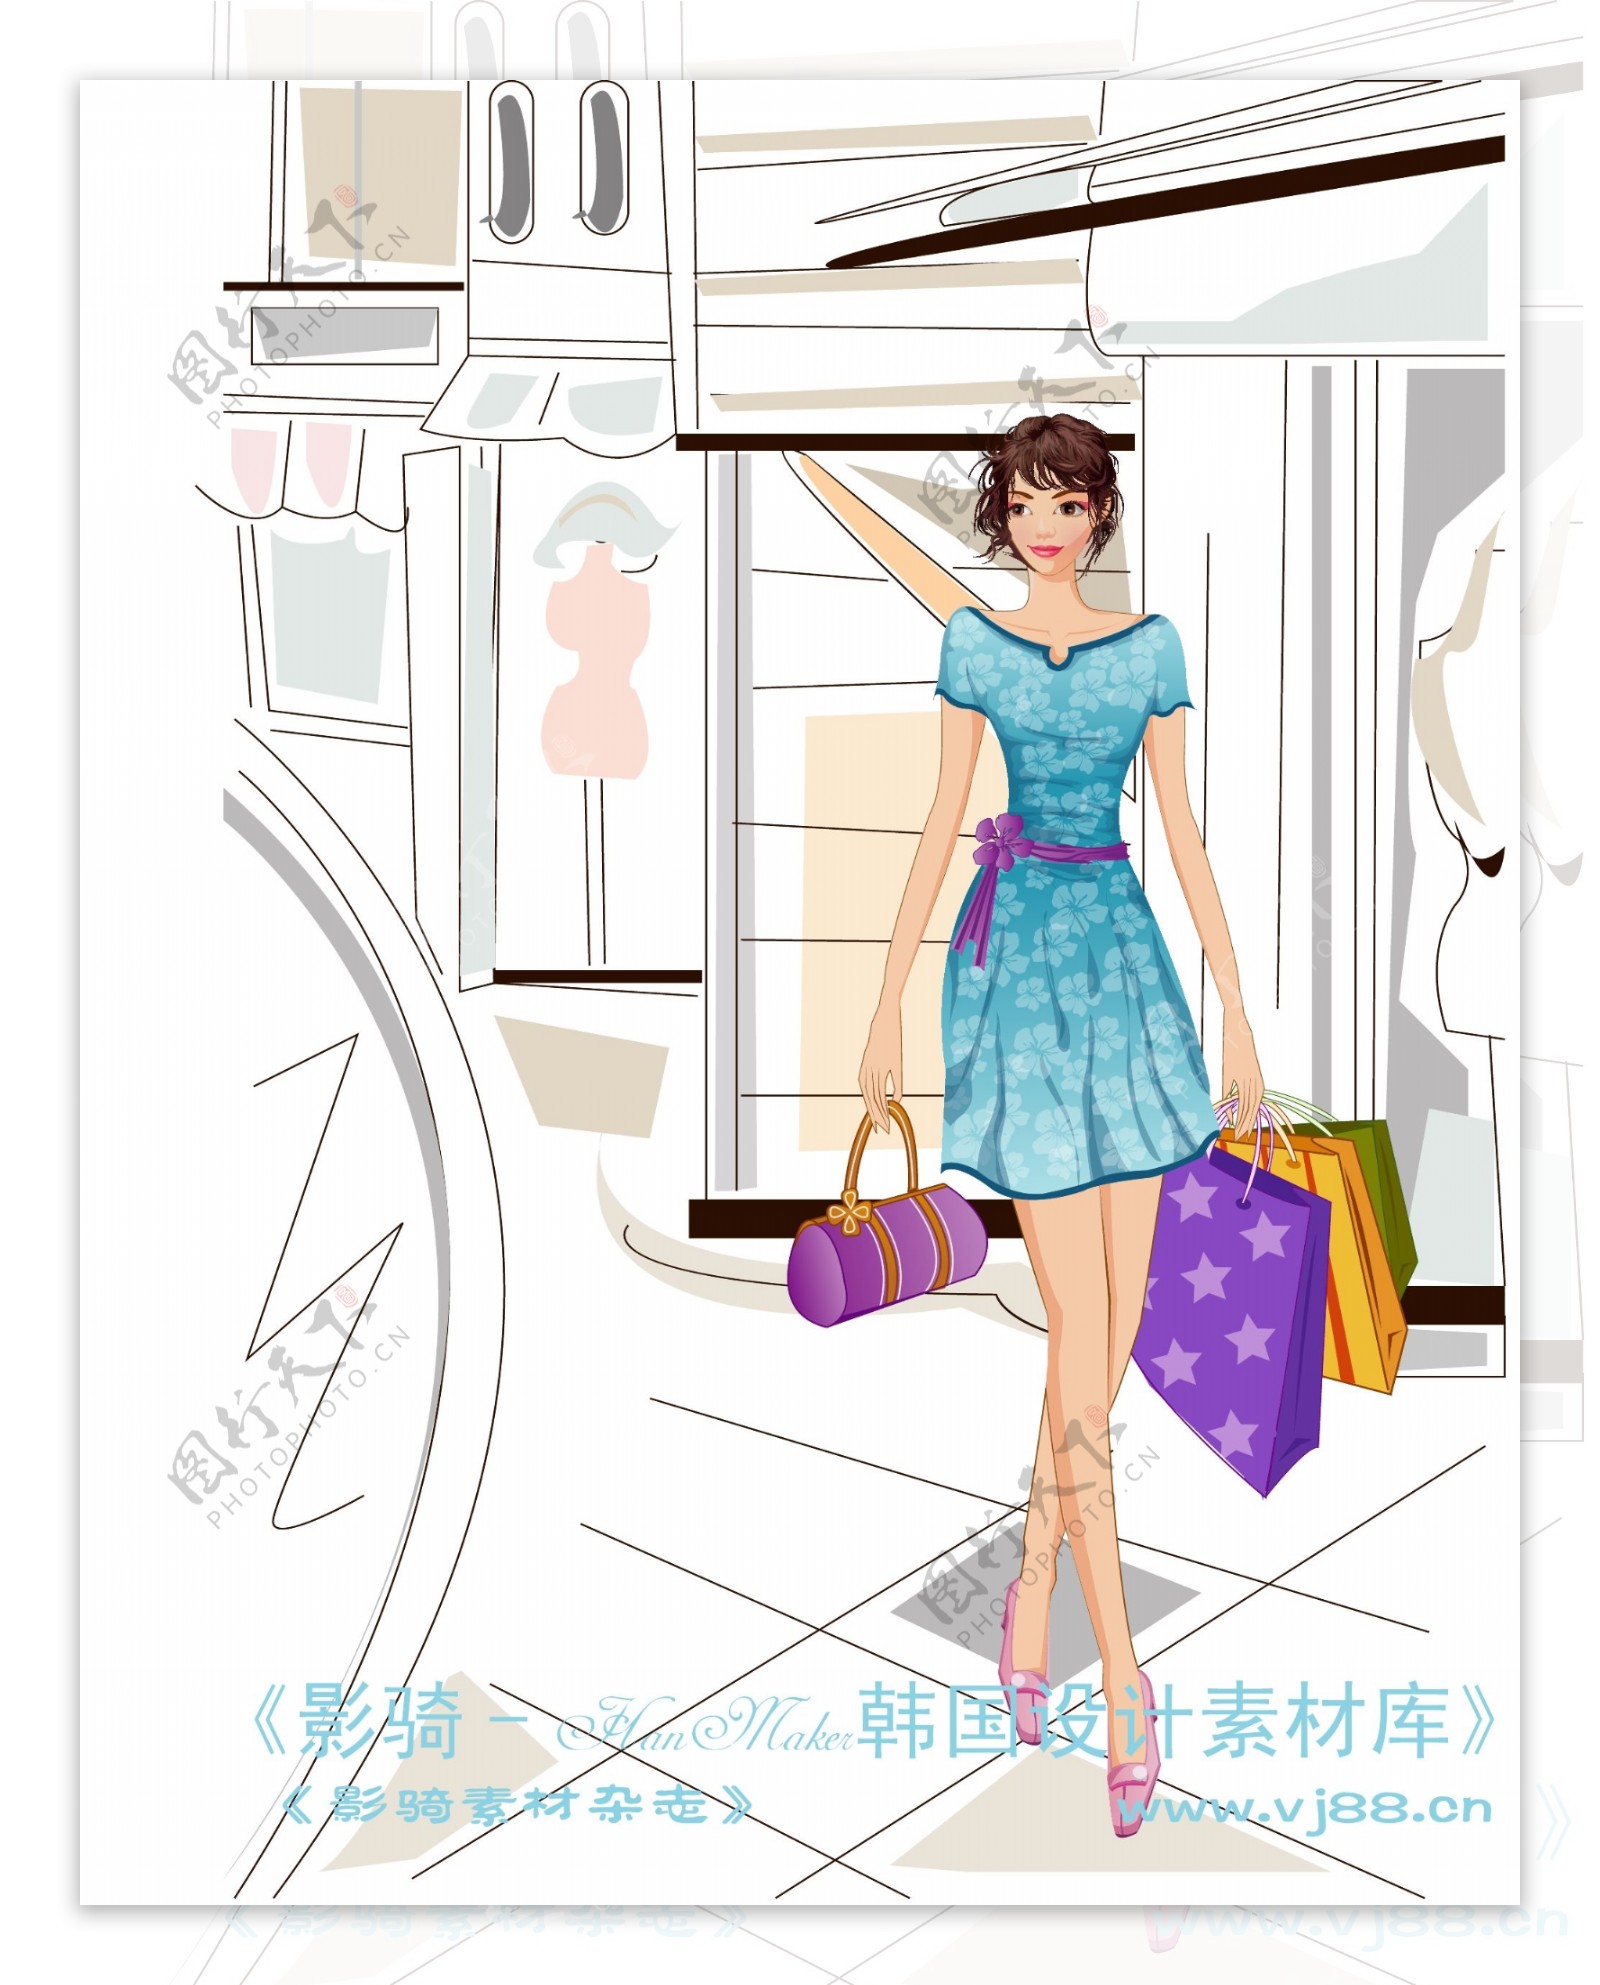 女性服饰购物女人时尚逛街矢量素材矢量图片HanMaker韩国设计素材库